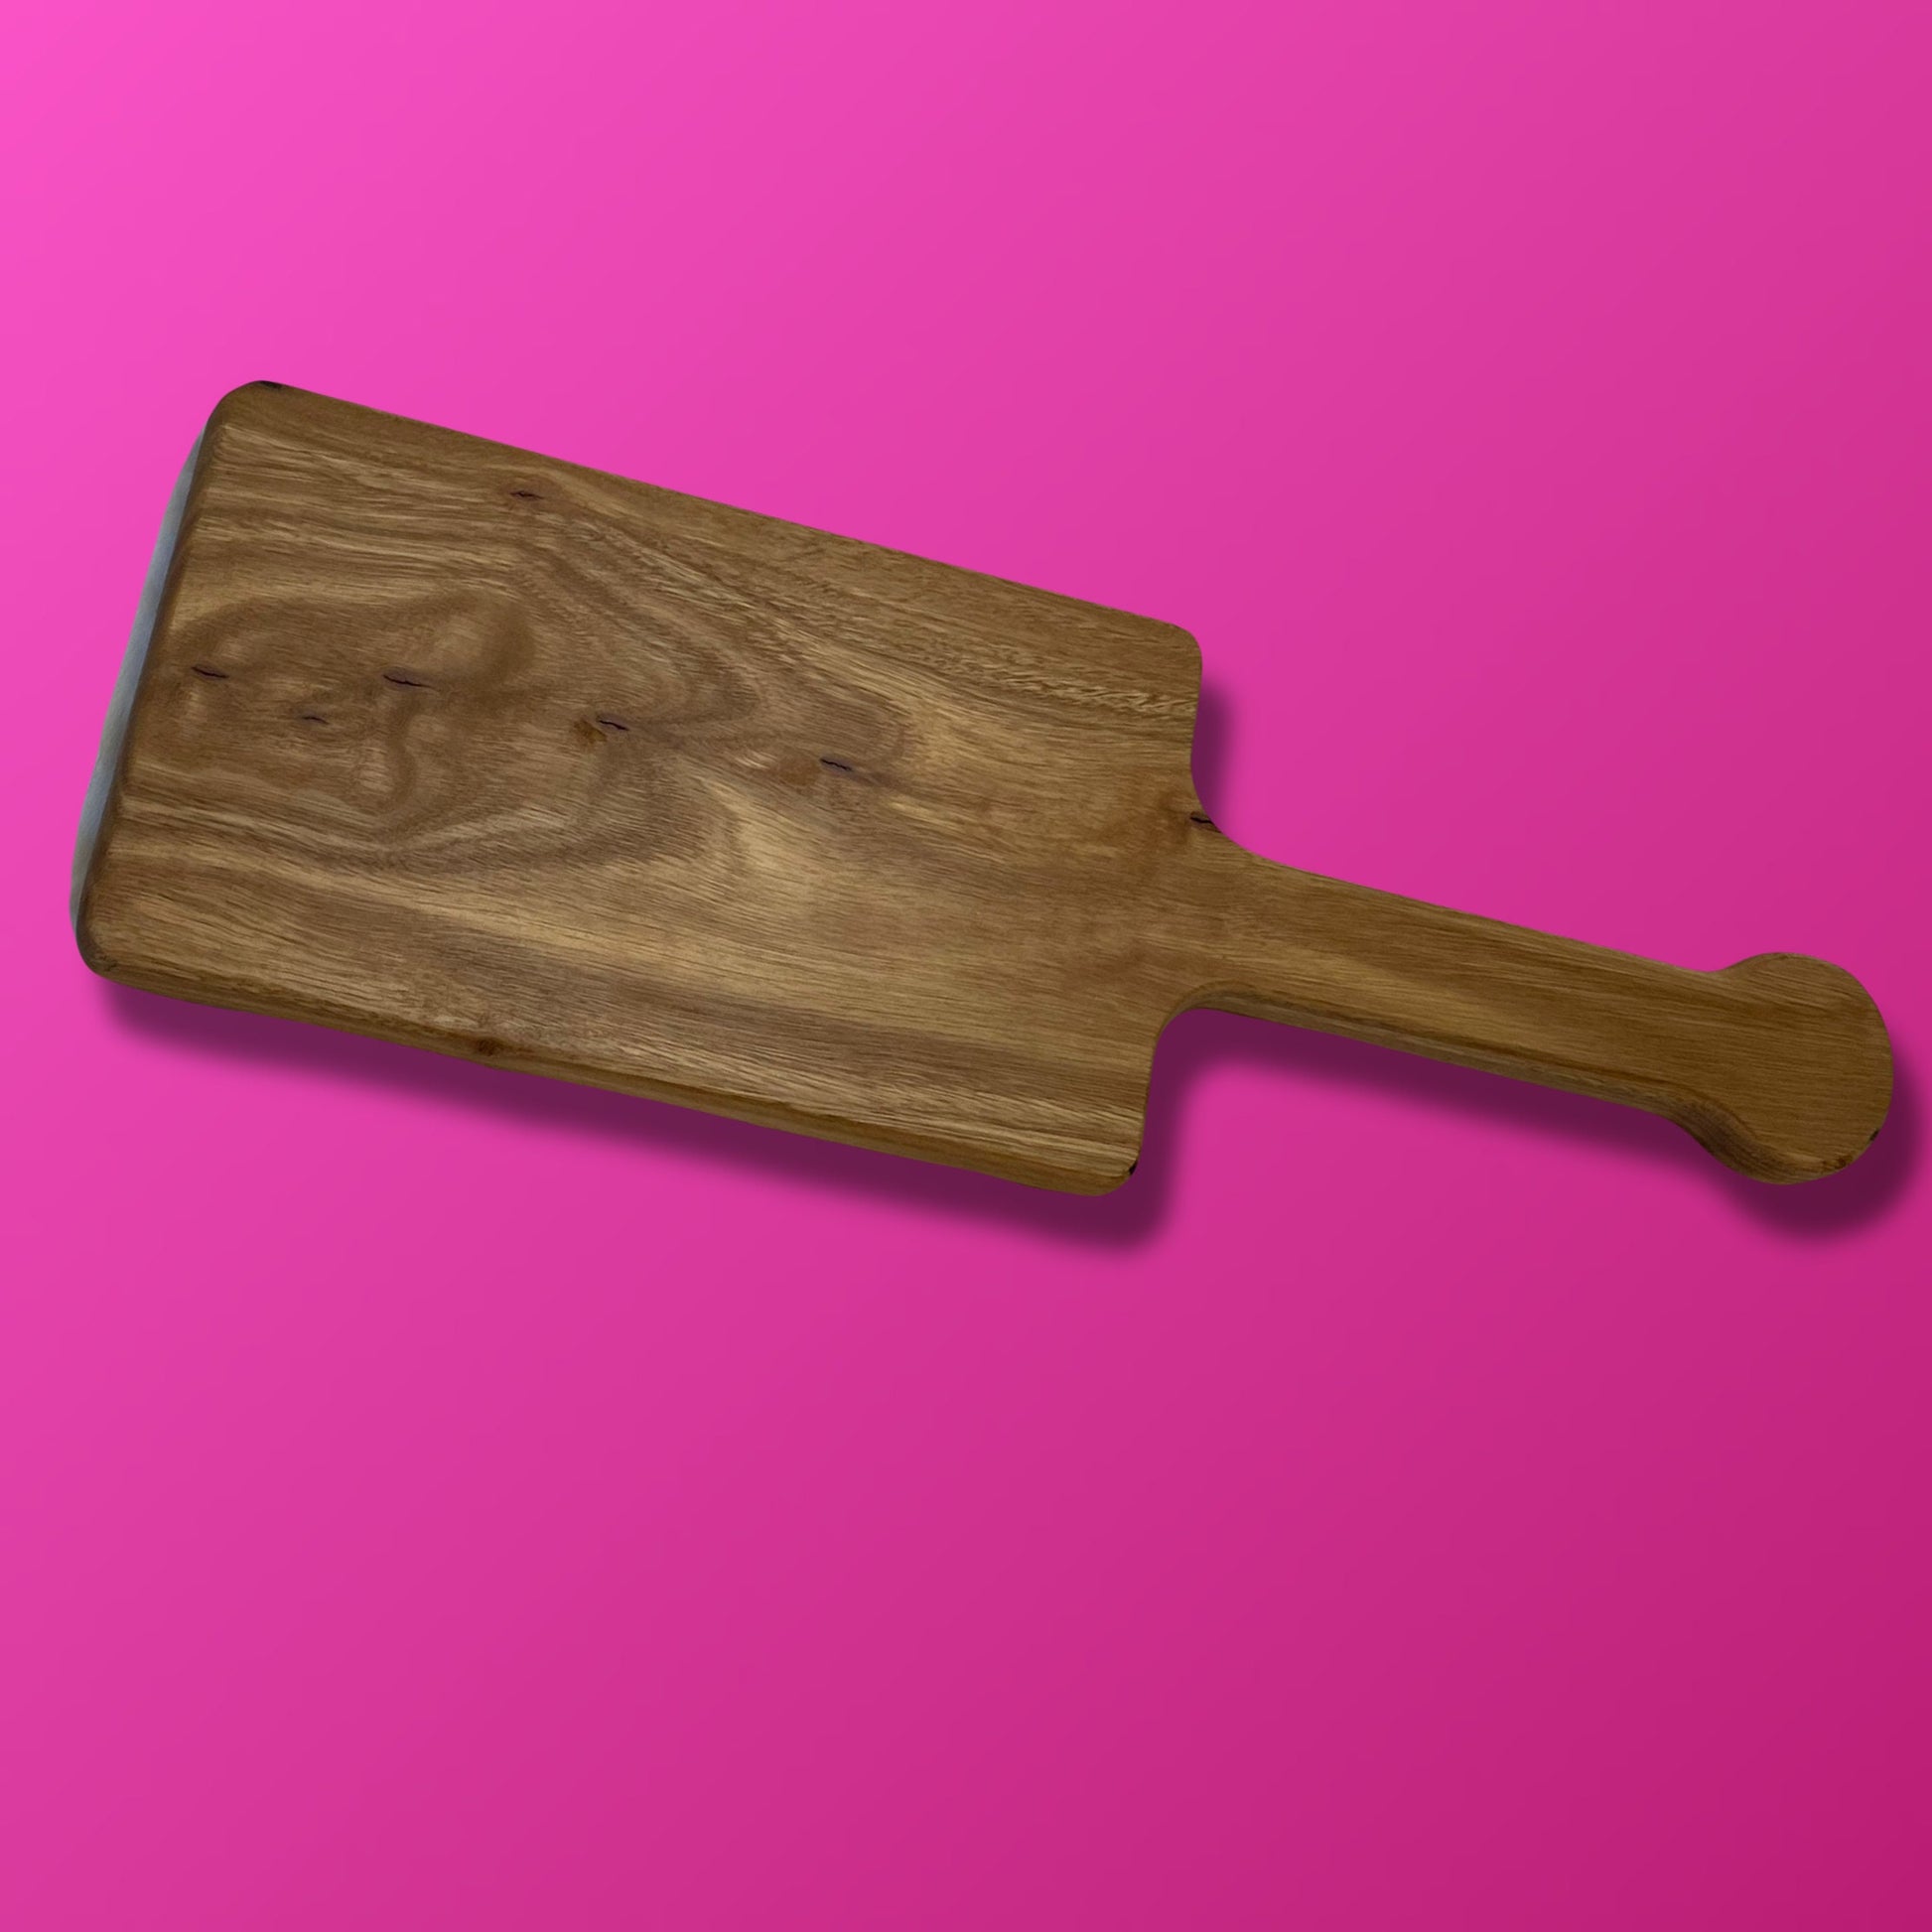 Heavy Hardwood Engraved Spanking Paddle, BDSM Toy Wooden Paddle